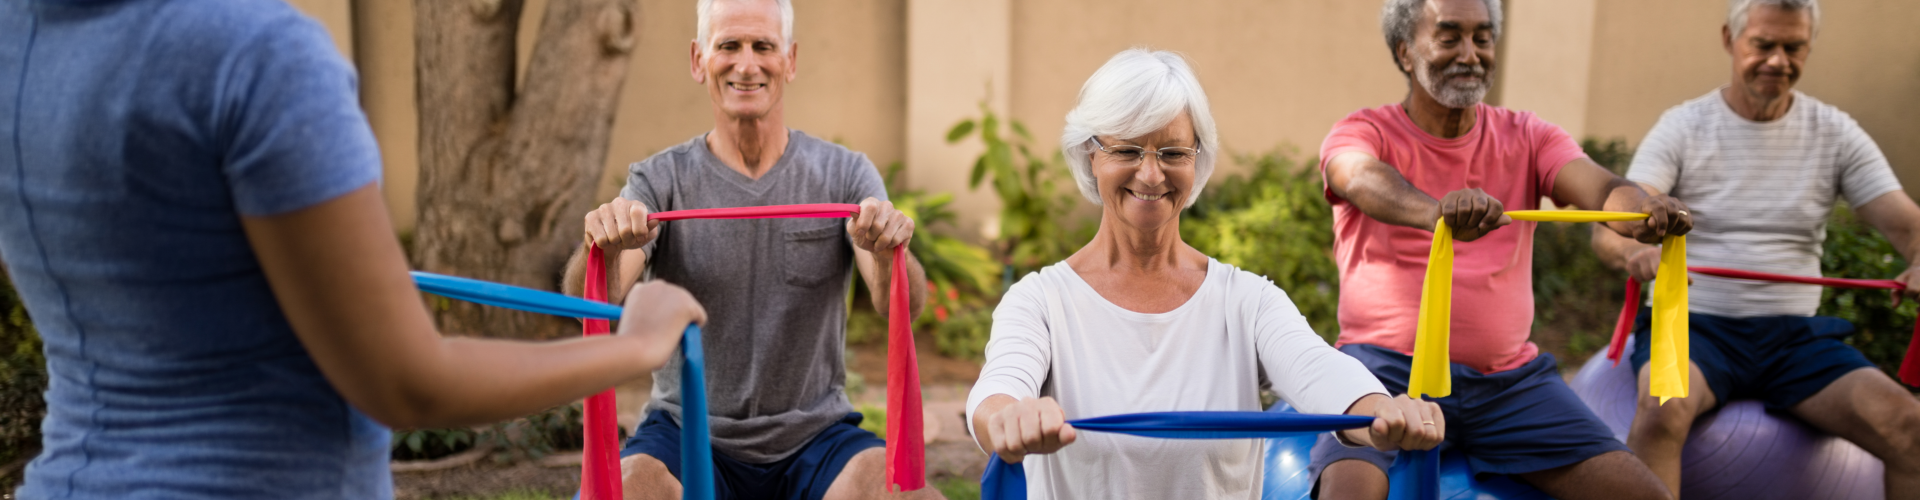 elderly doing exercise